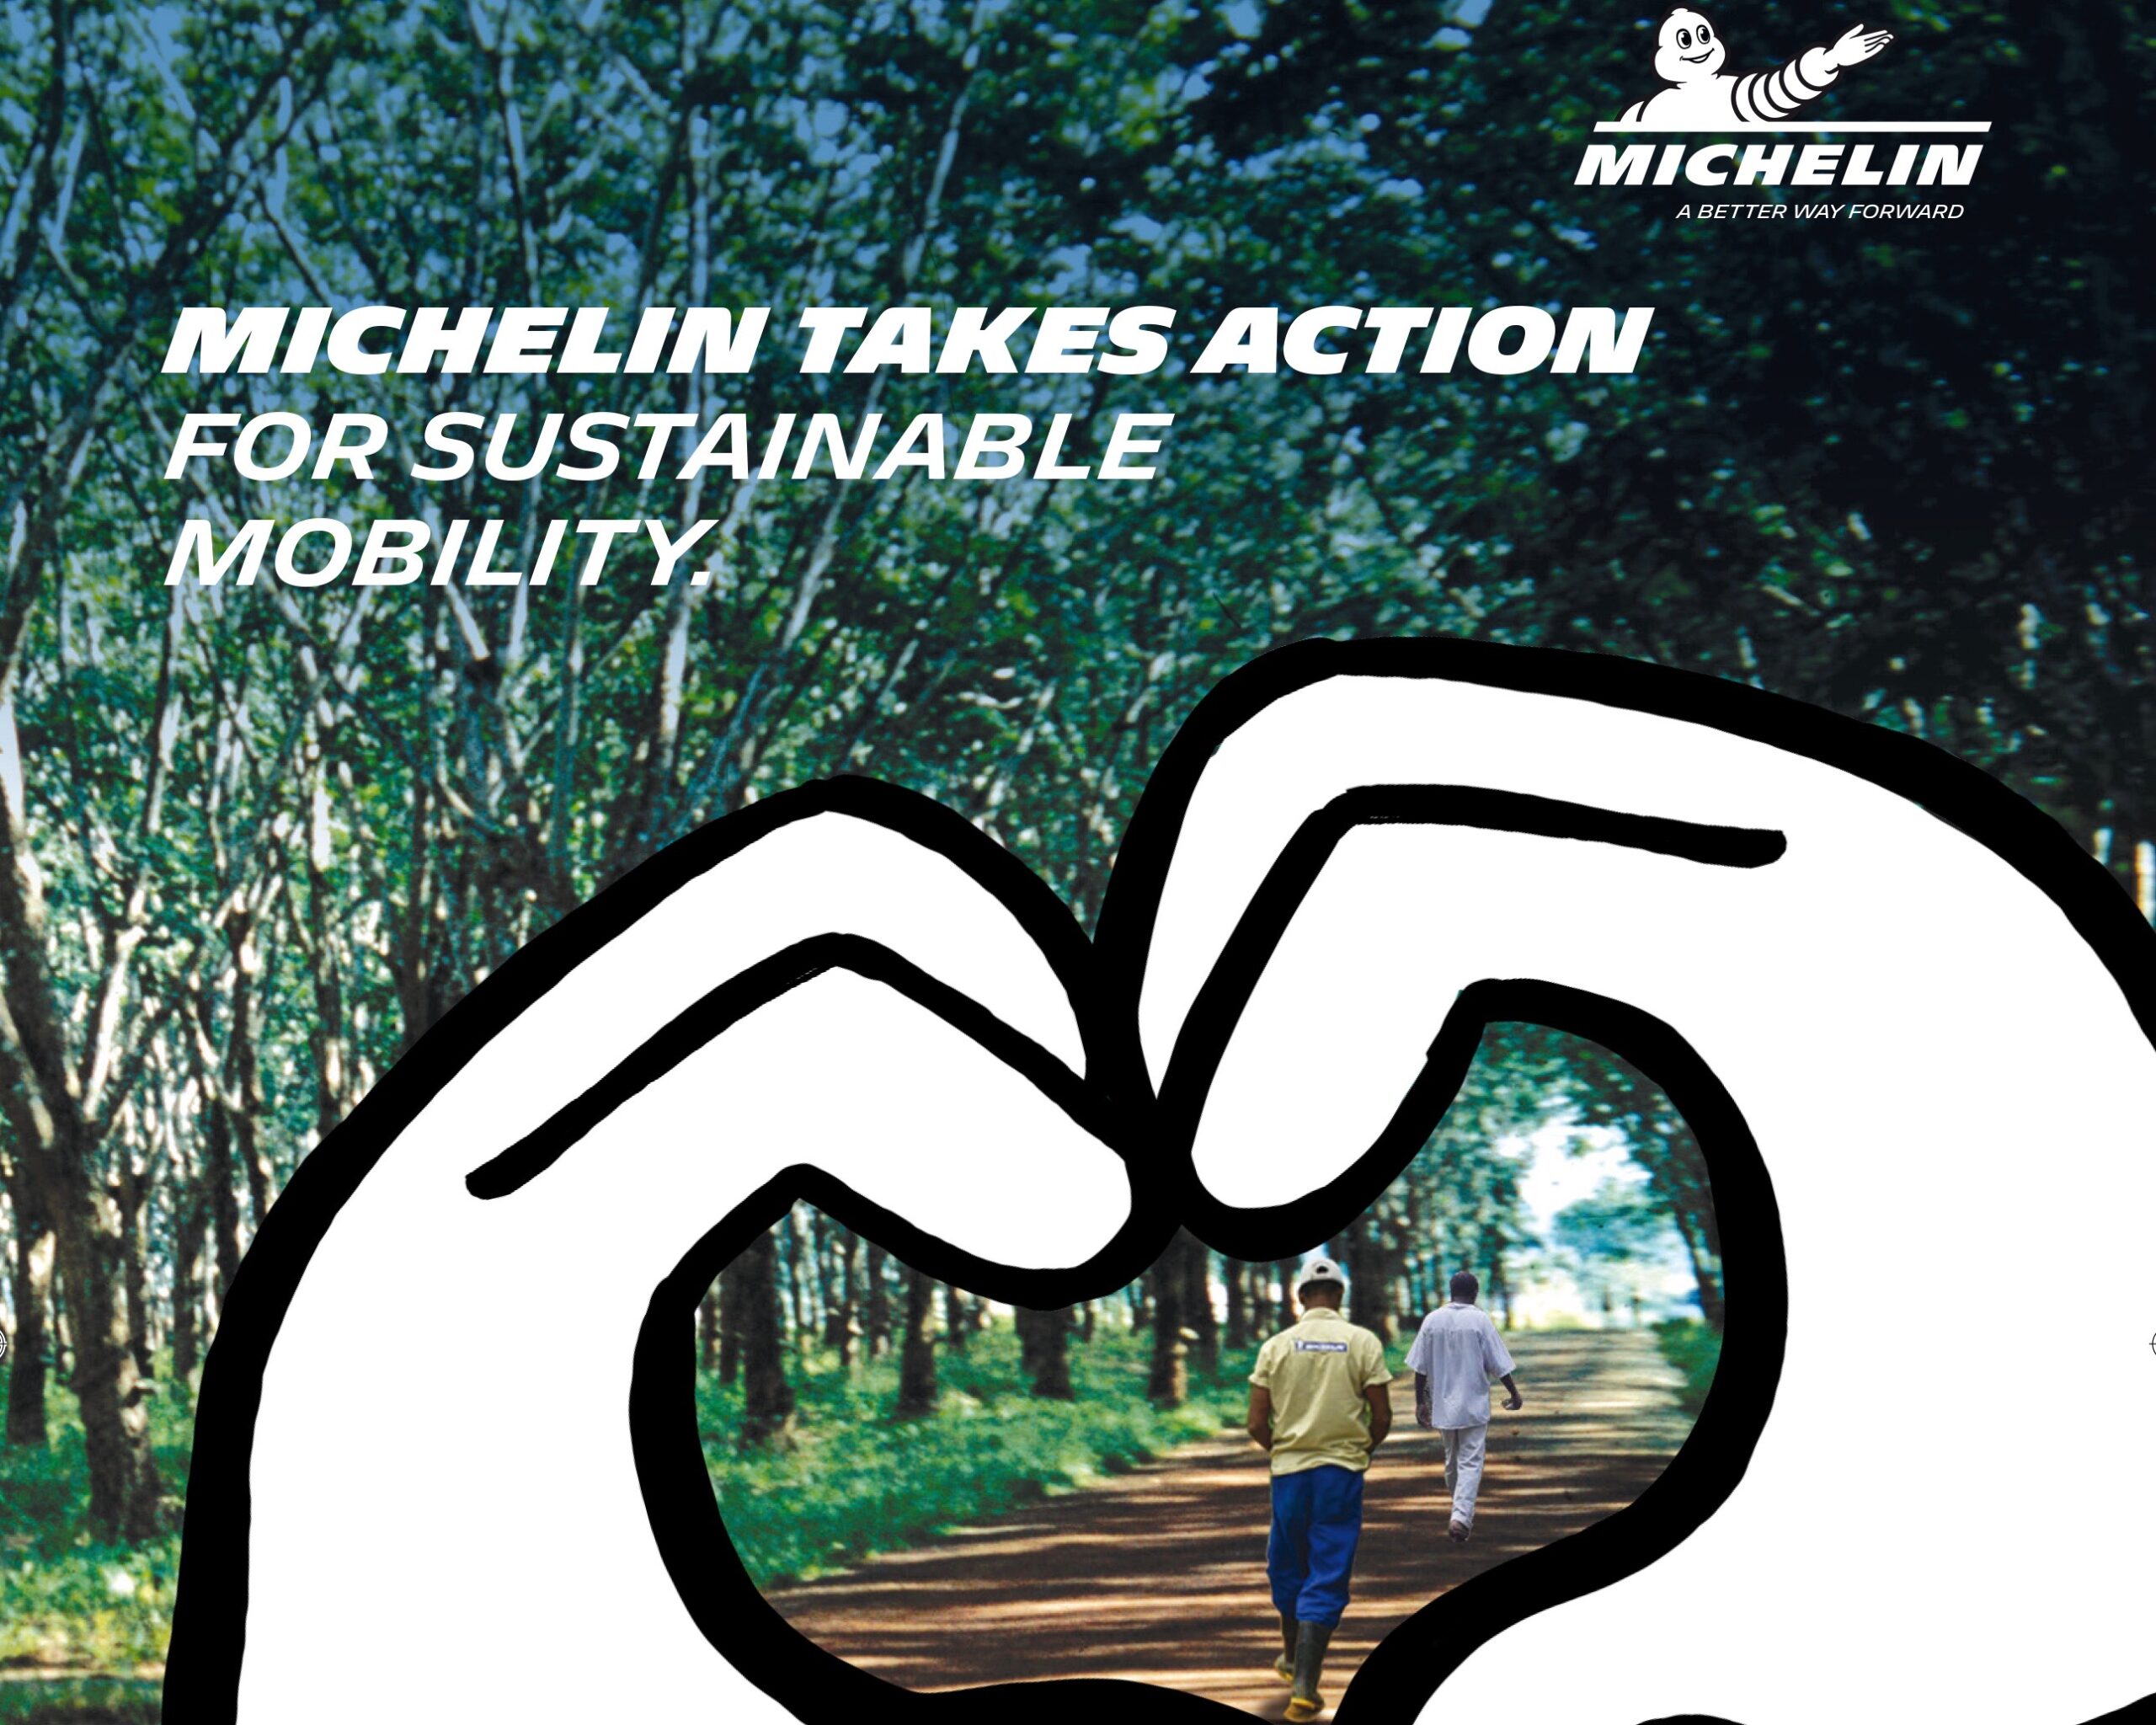 Pneumatici: Michelin vince per la terza volta lo European Sustainability Award